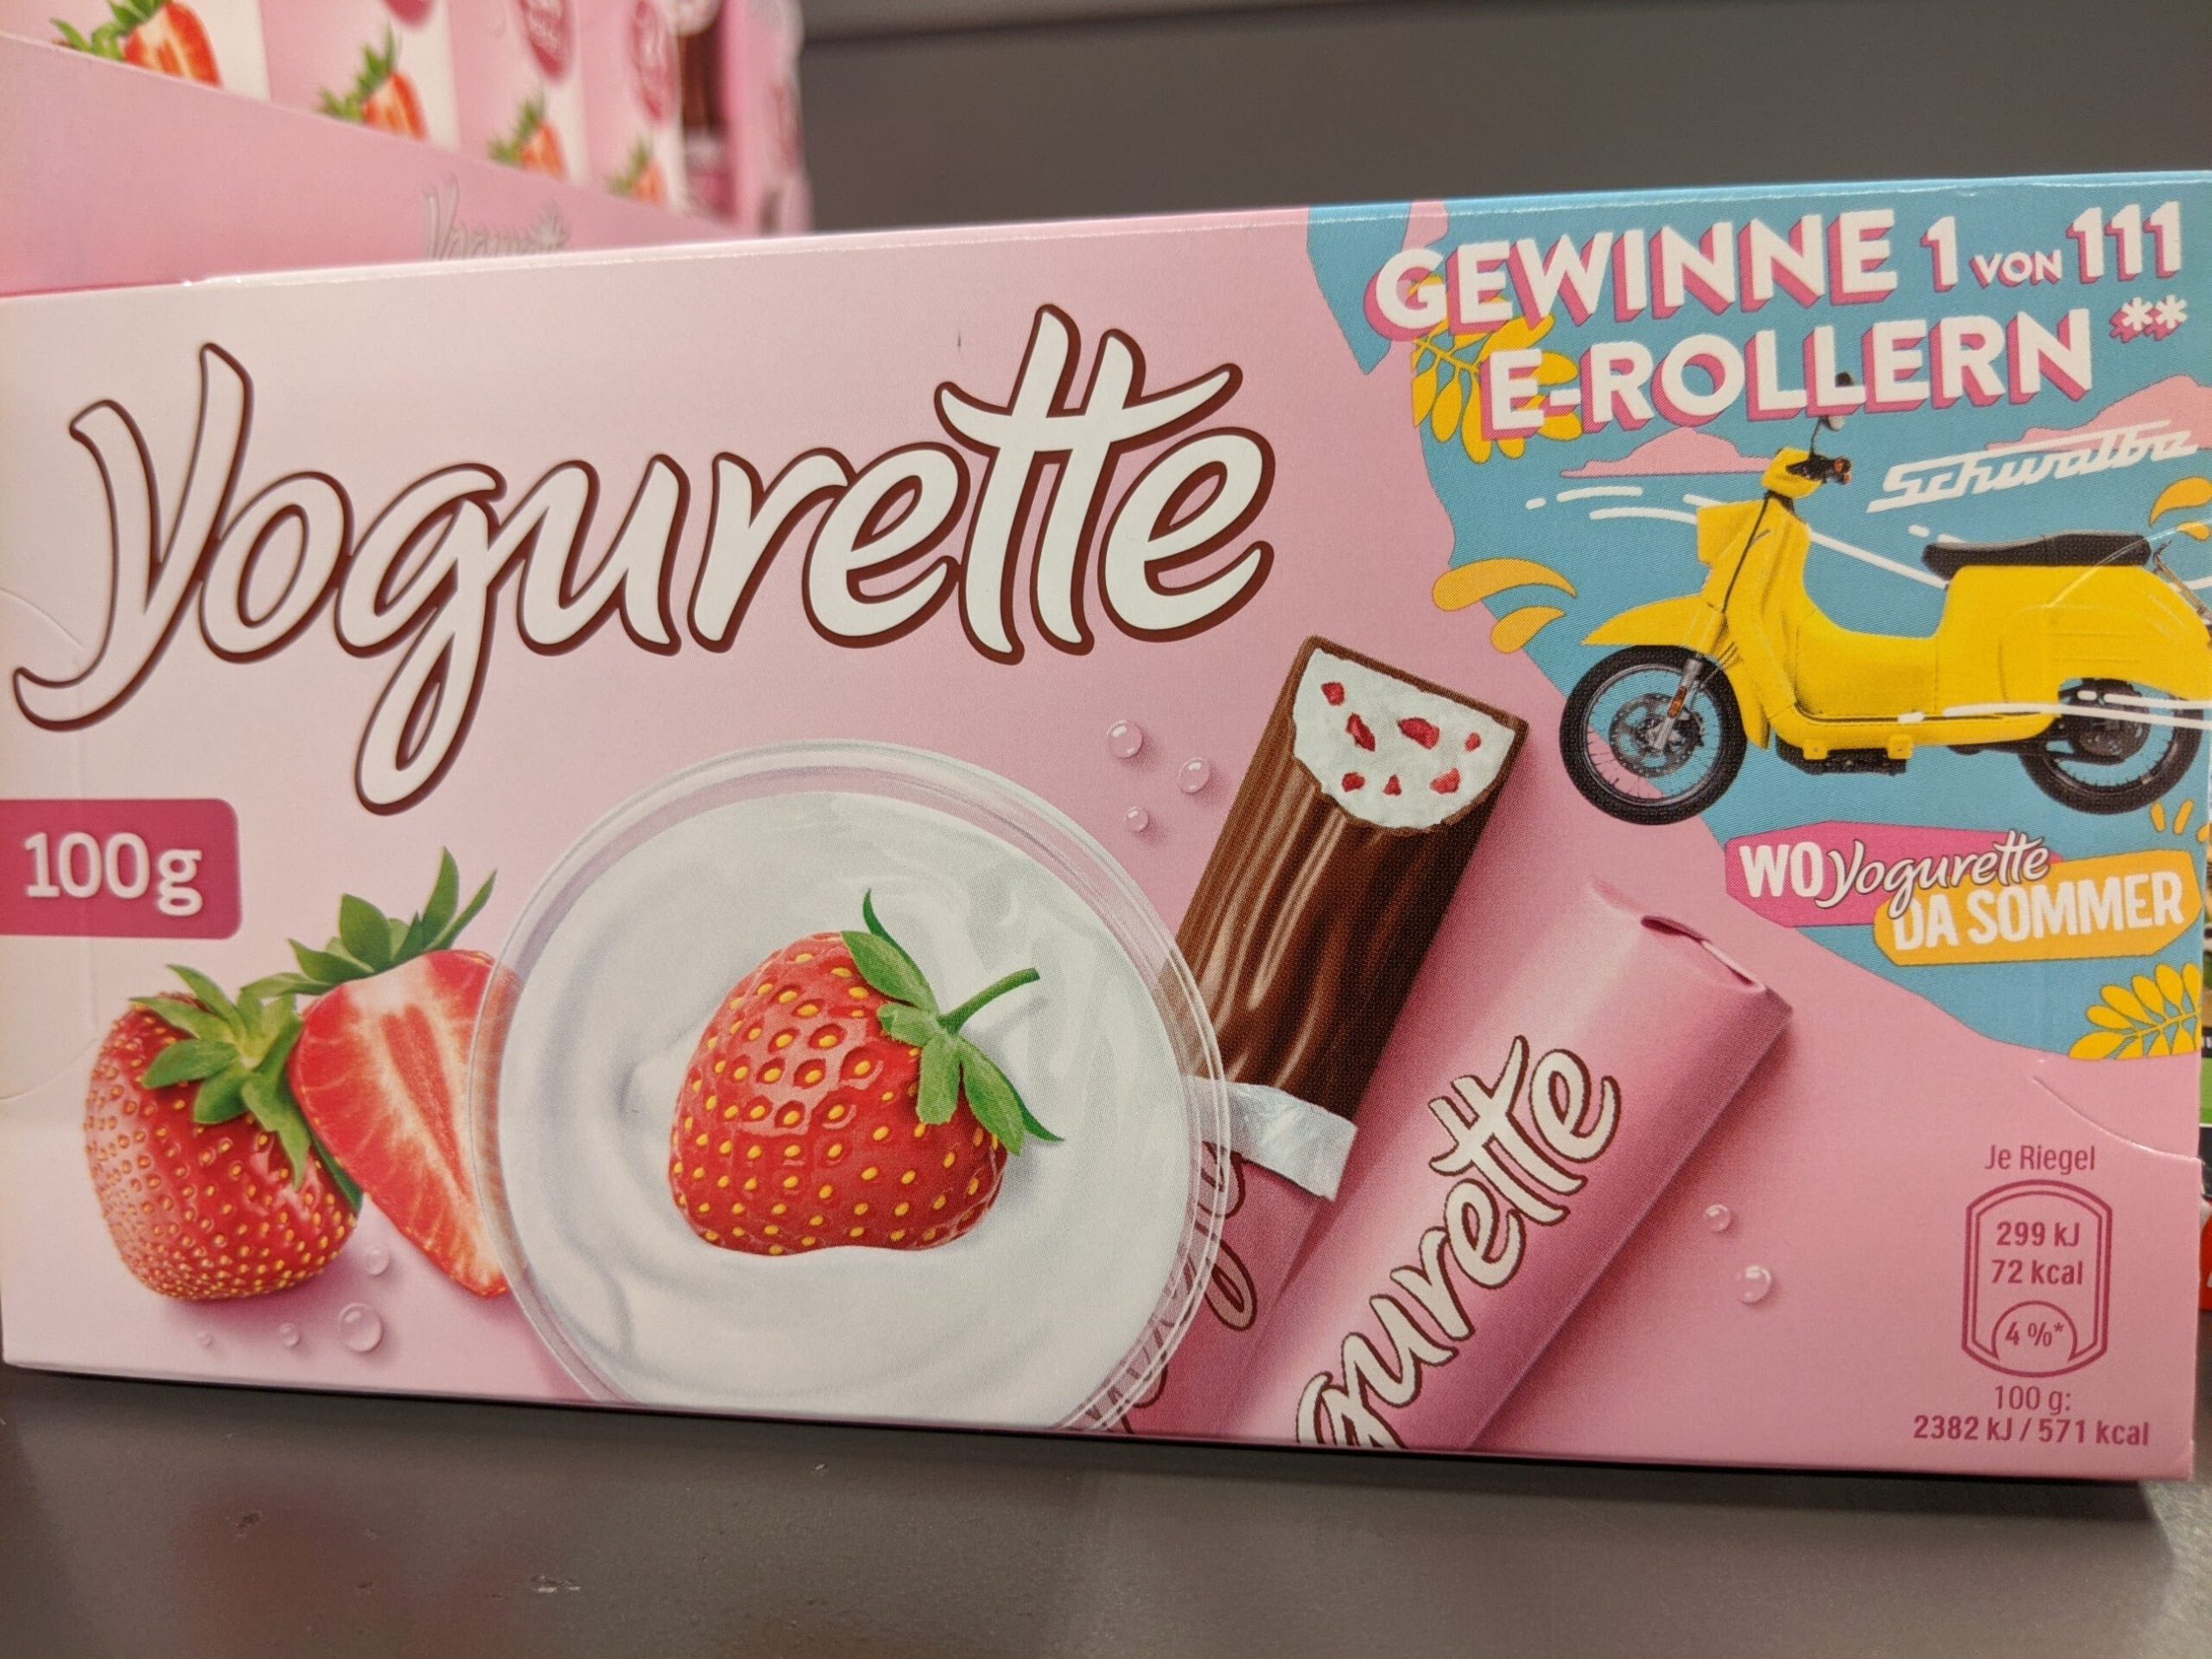 Yogurette: E-Roller Schwalbe von Govecs gewinnen - Code eingeben